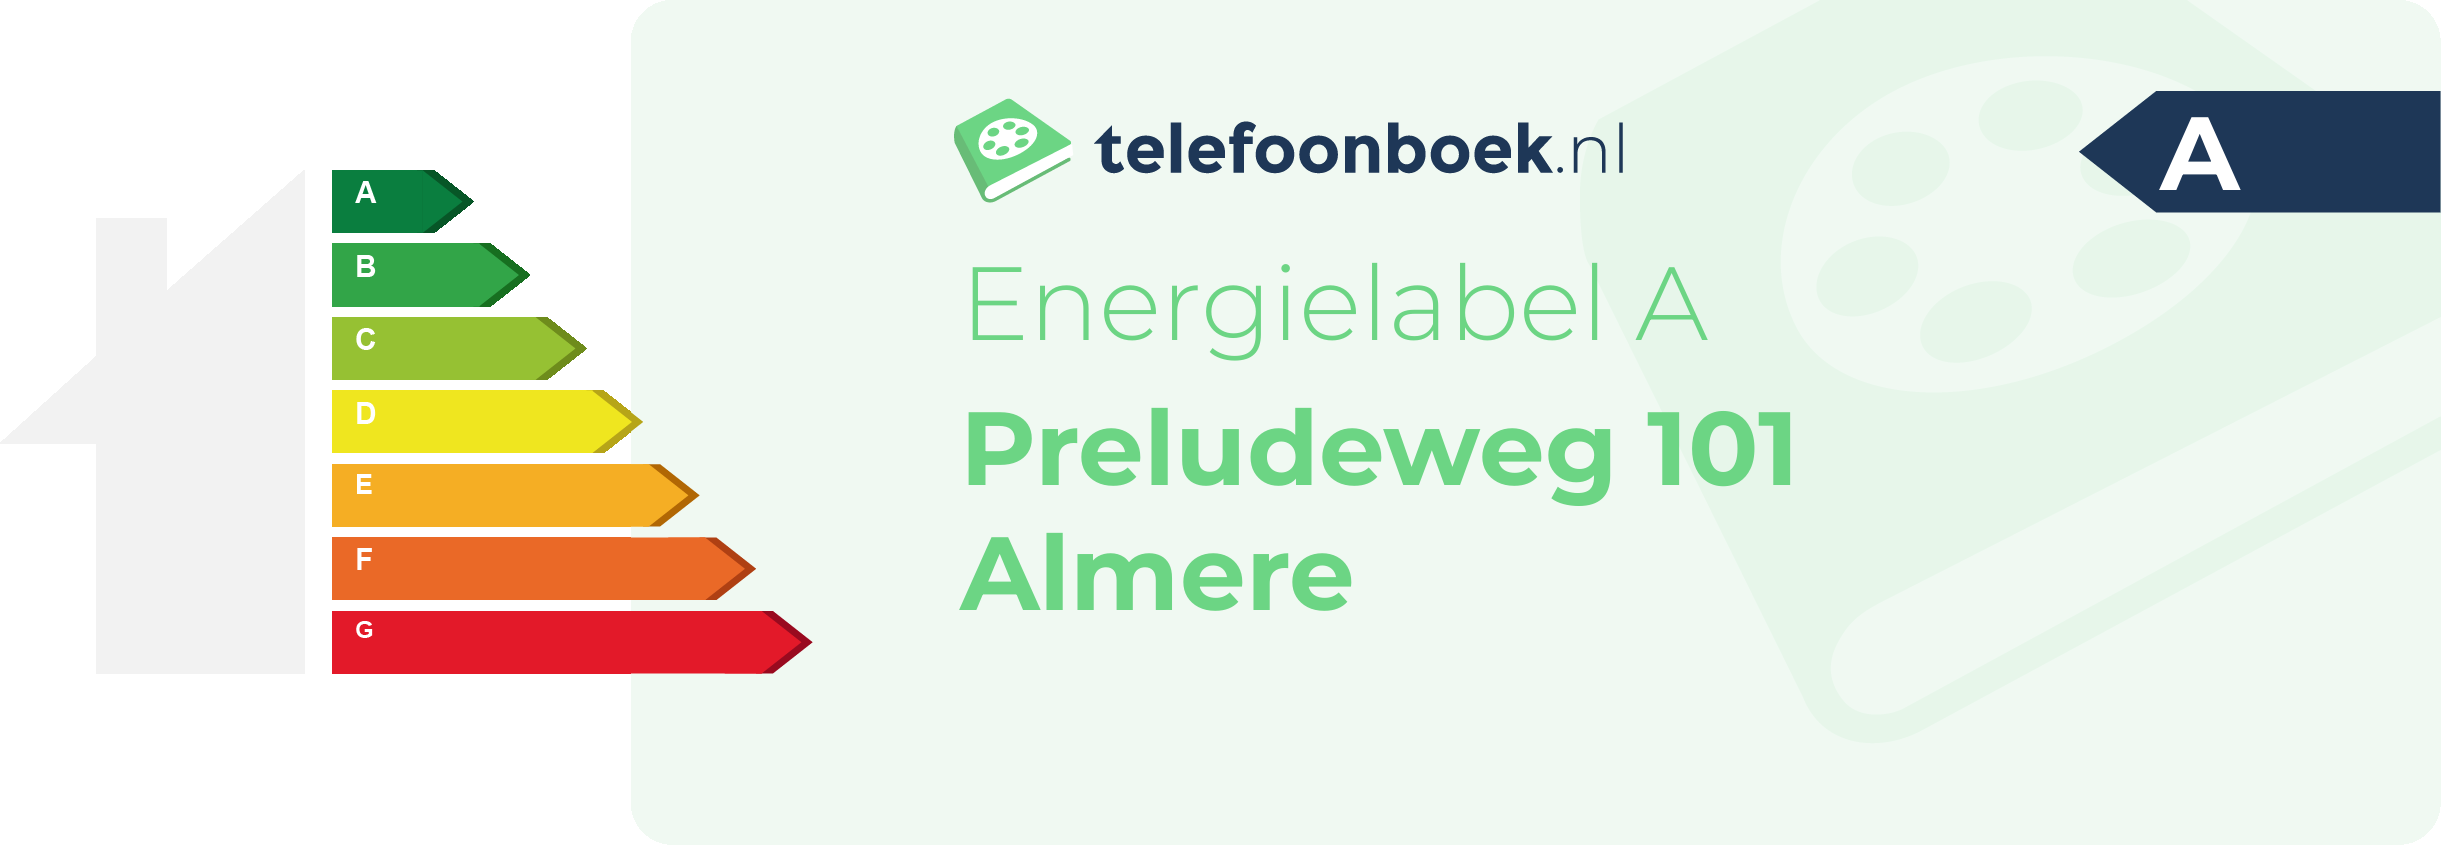 Energielabel Preludeweg 101 Almere